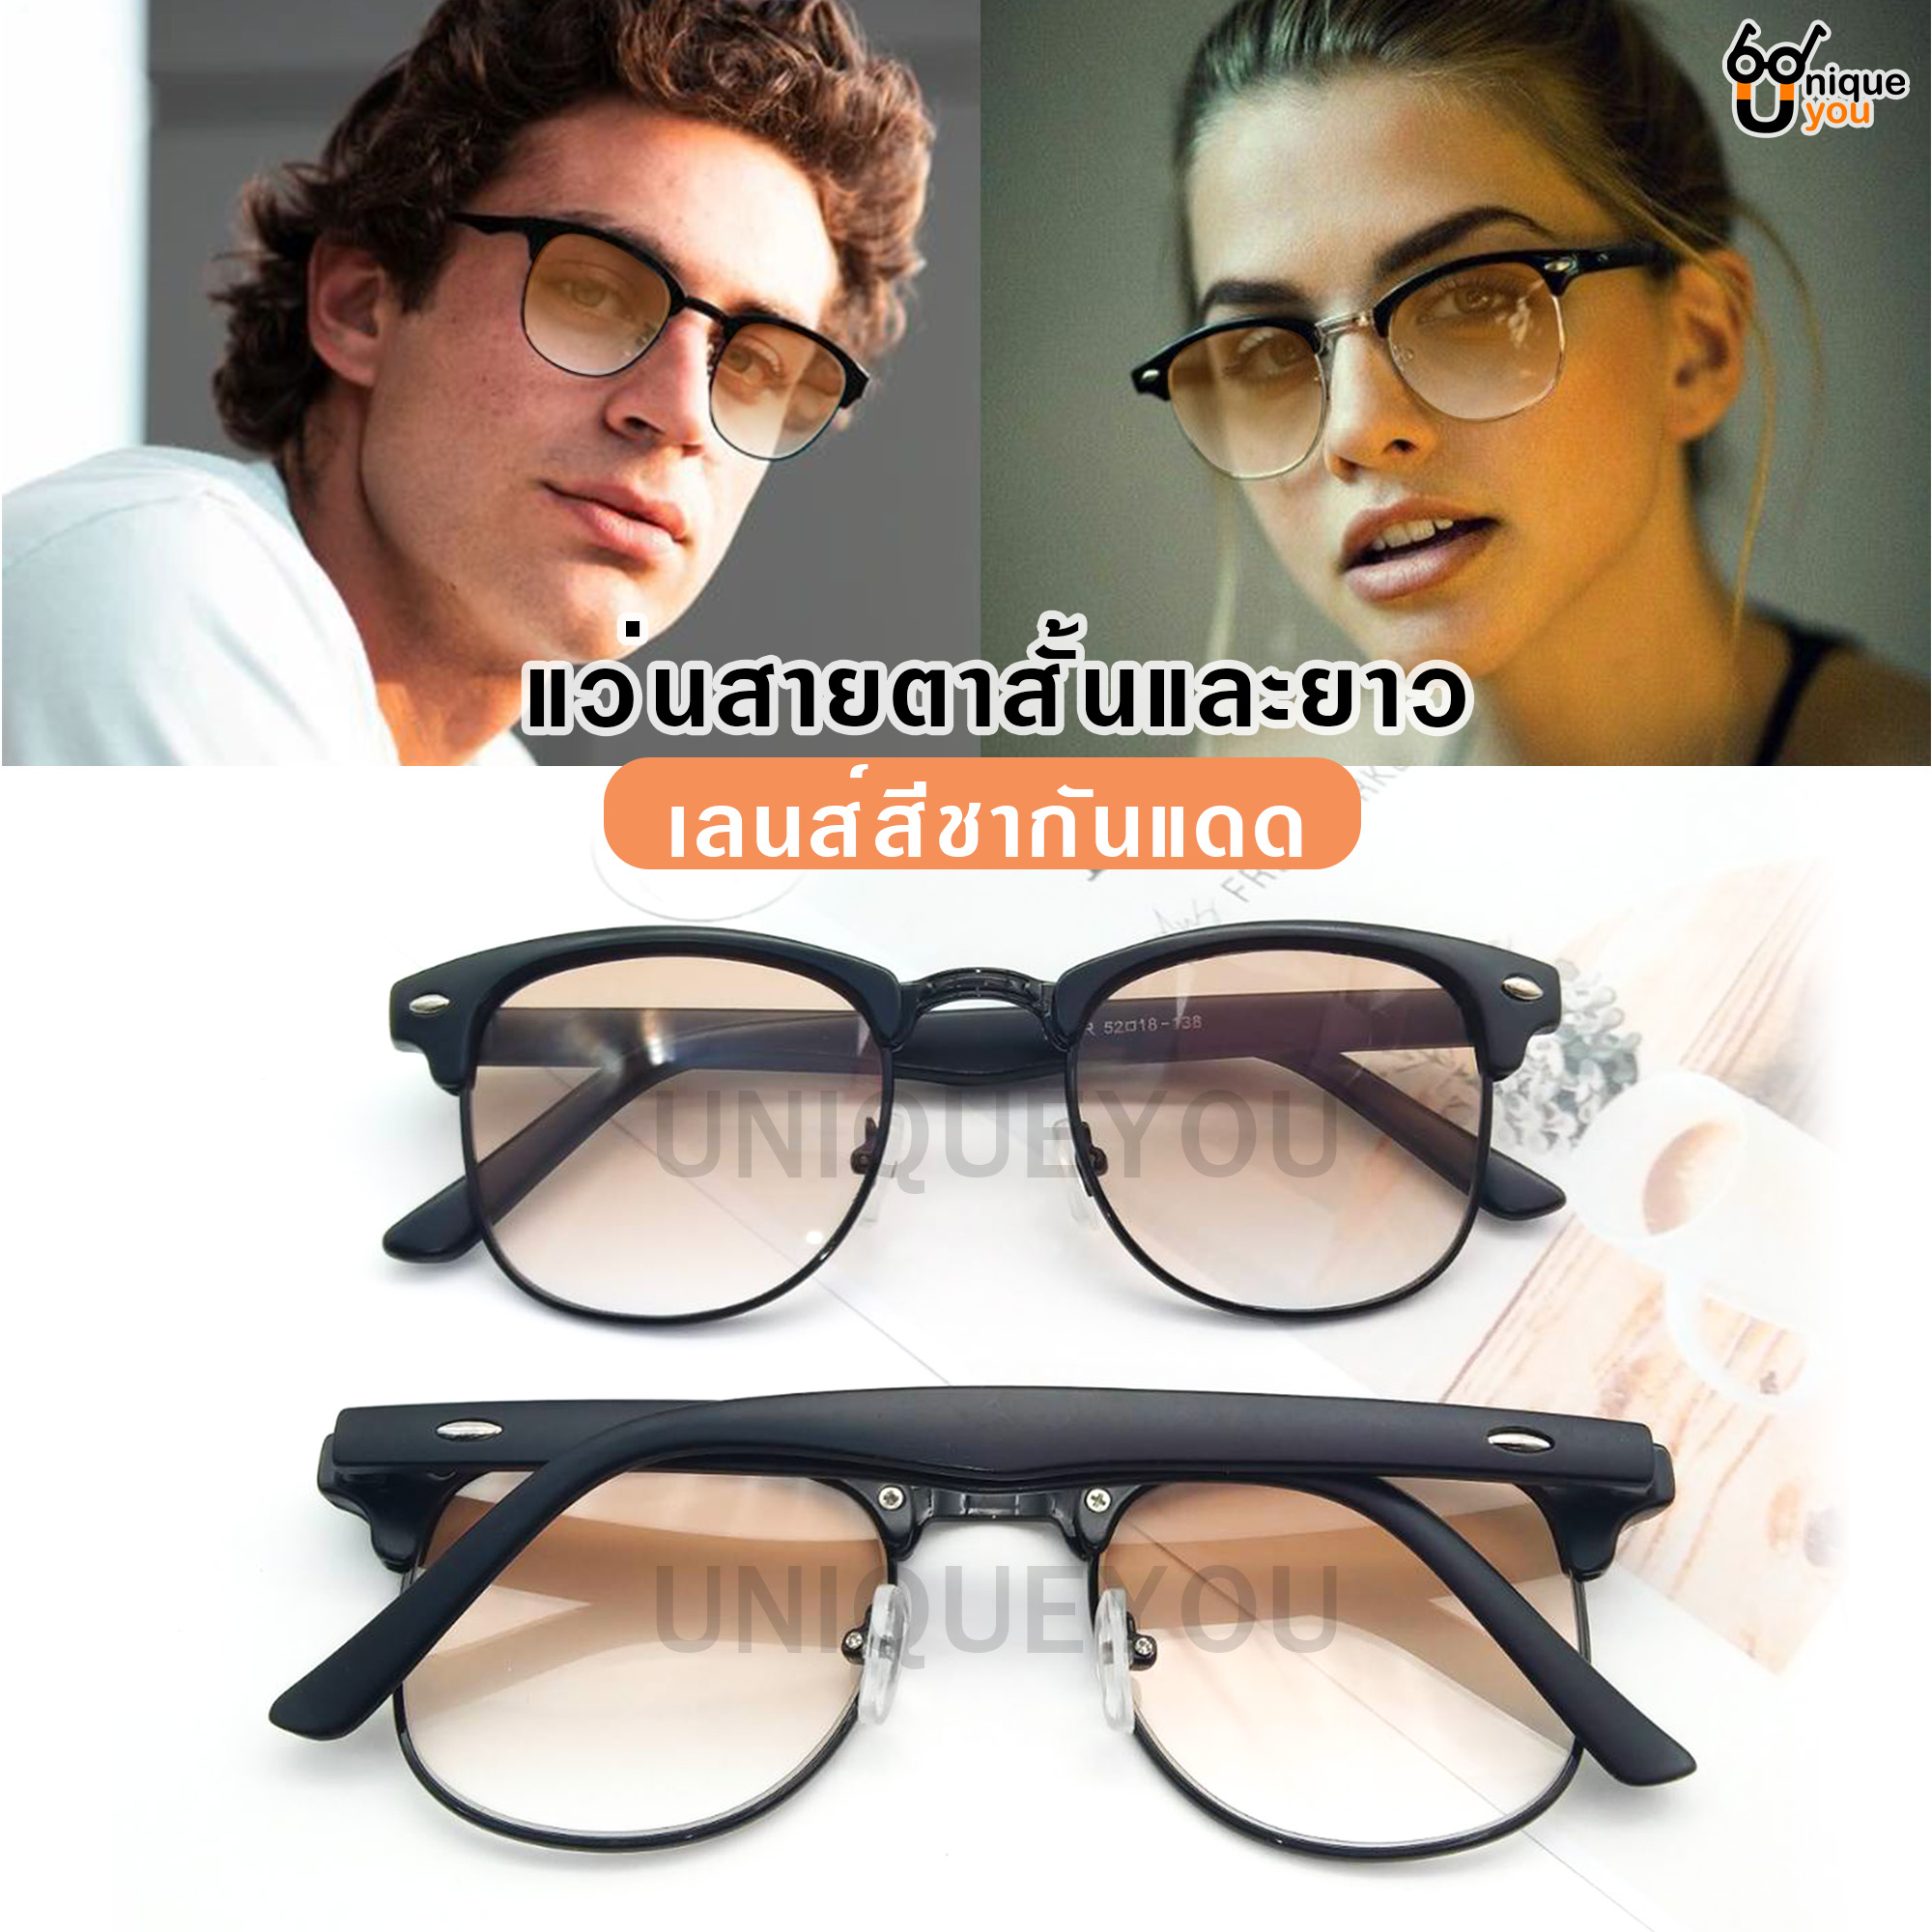 ภาพอธิบายเพิ่มเติมของ Uniq แว่นสายตายาว แว่นสายตาสั้น แว่นกันแดด แว่นสายตาพร้อมกันแดด แว่นกันแดด+เลนส์สายตา เลนส์สีชา